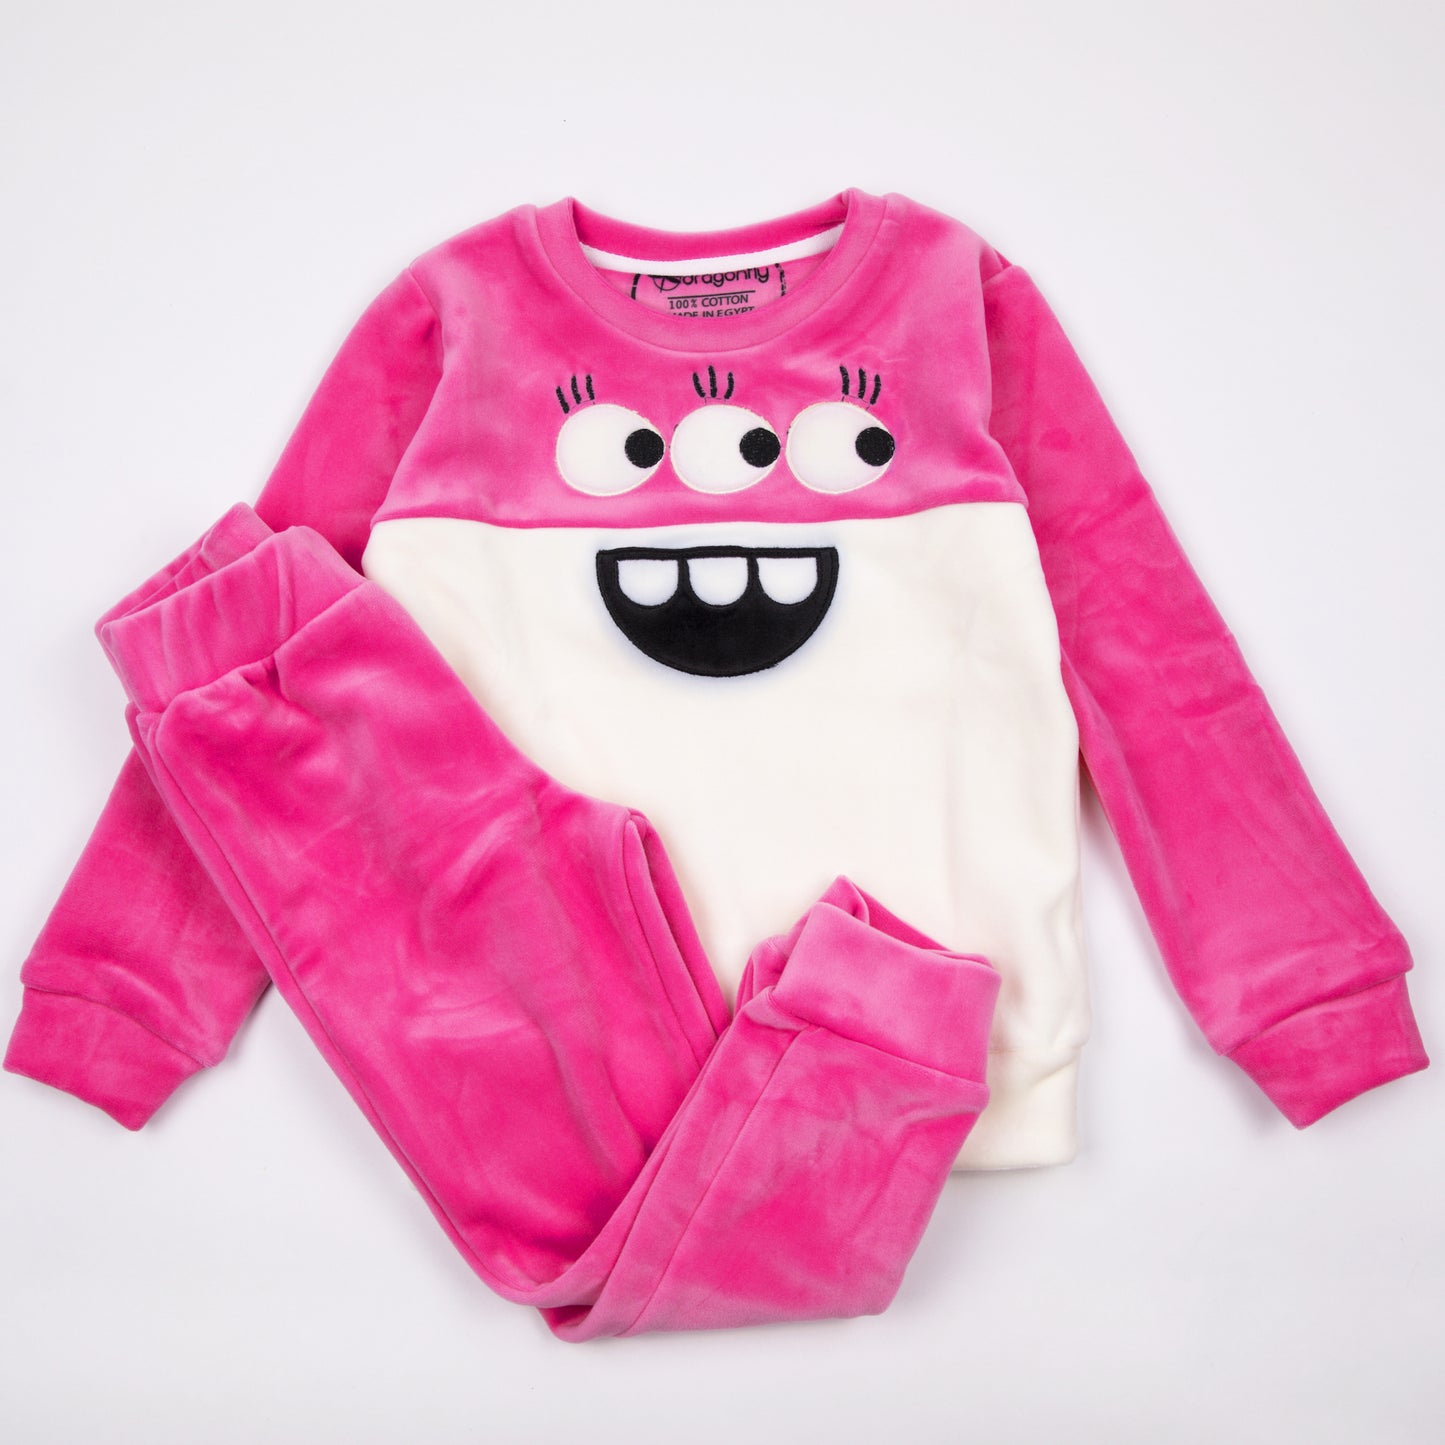 Pink 3-Eyed Monster Pajama